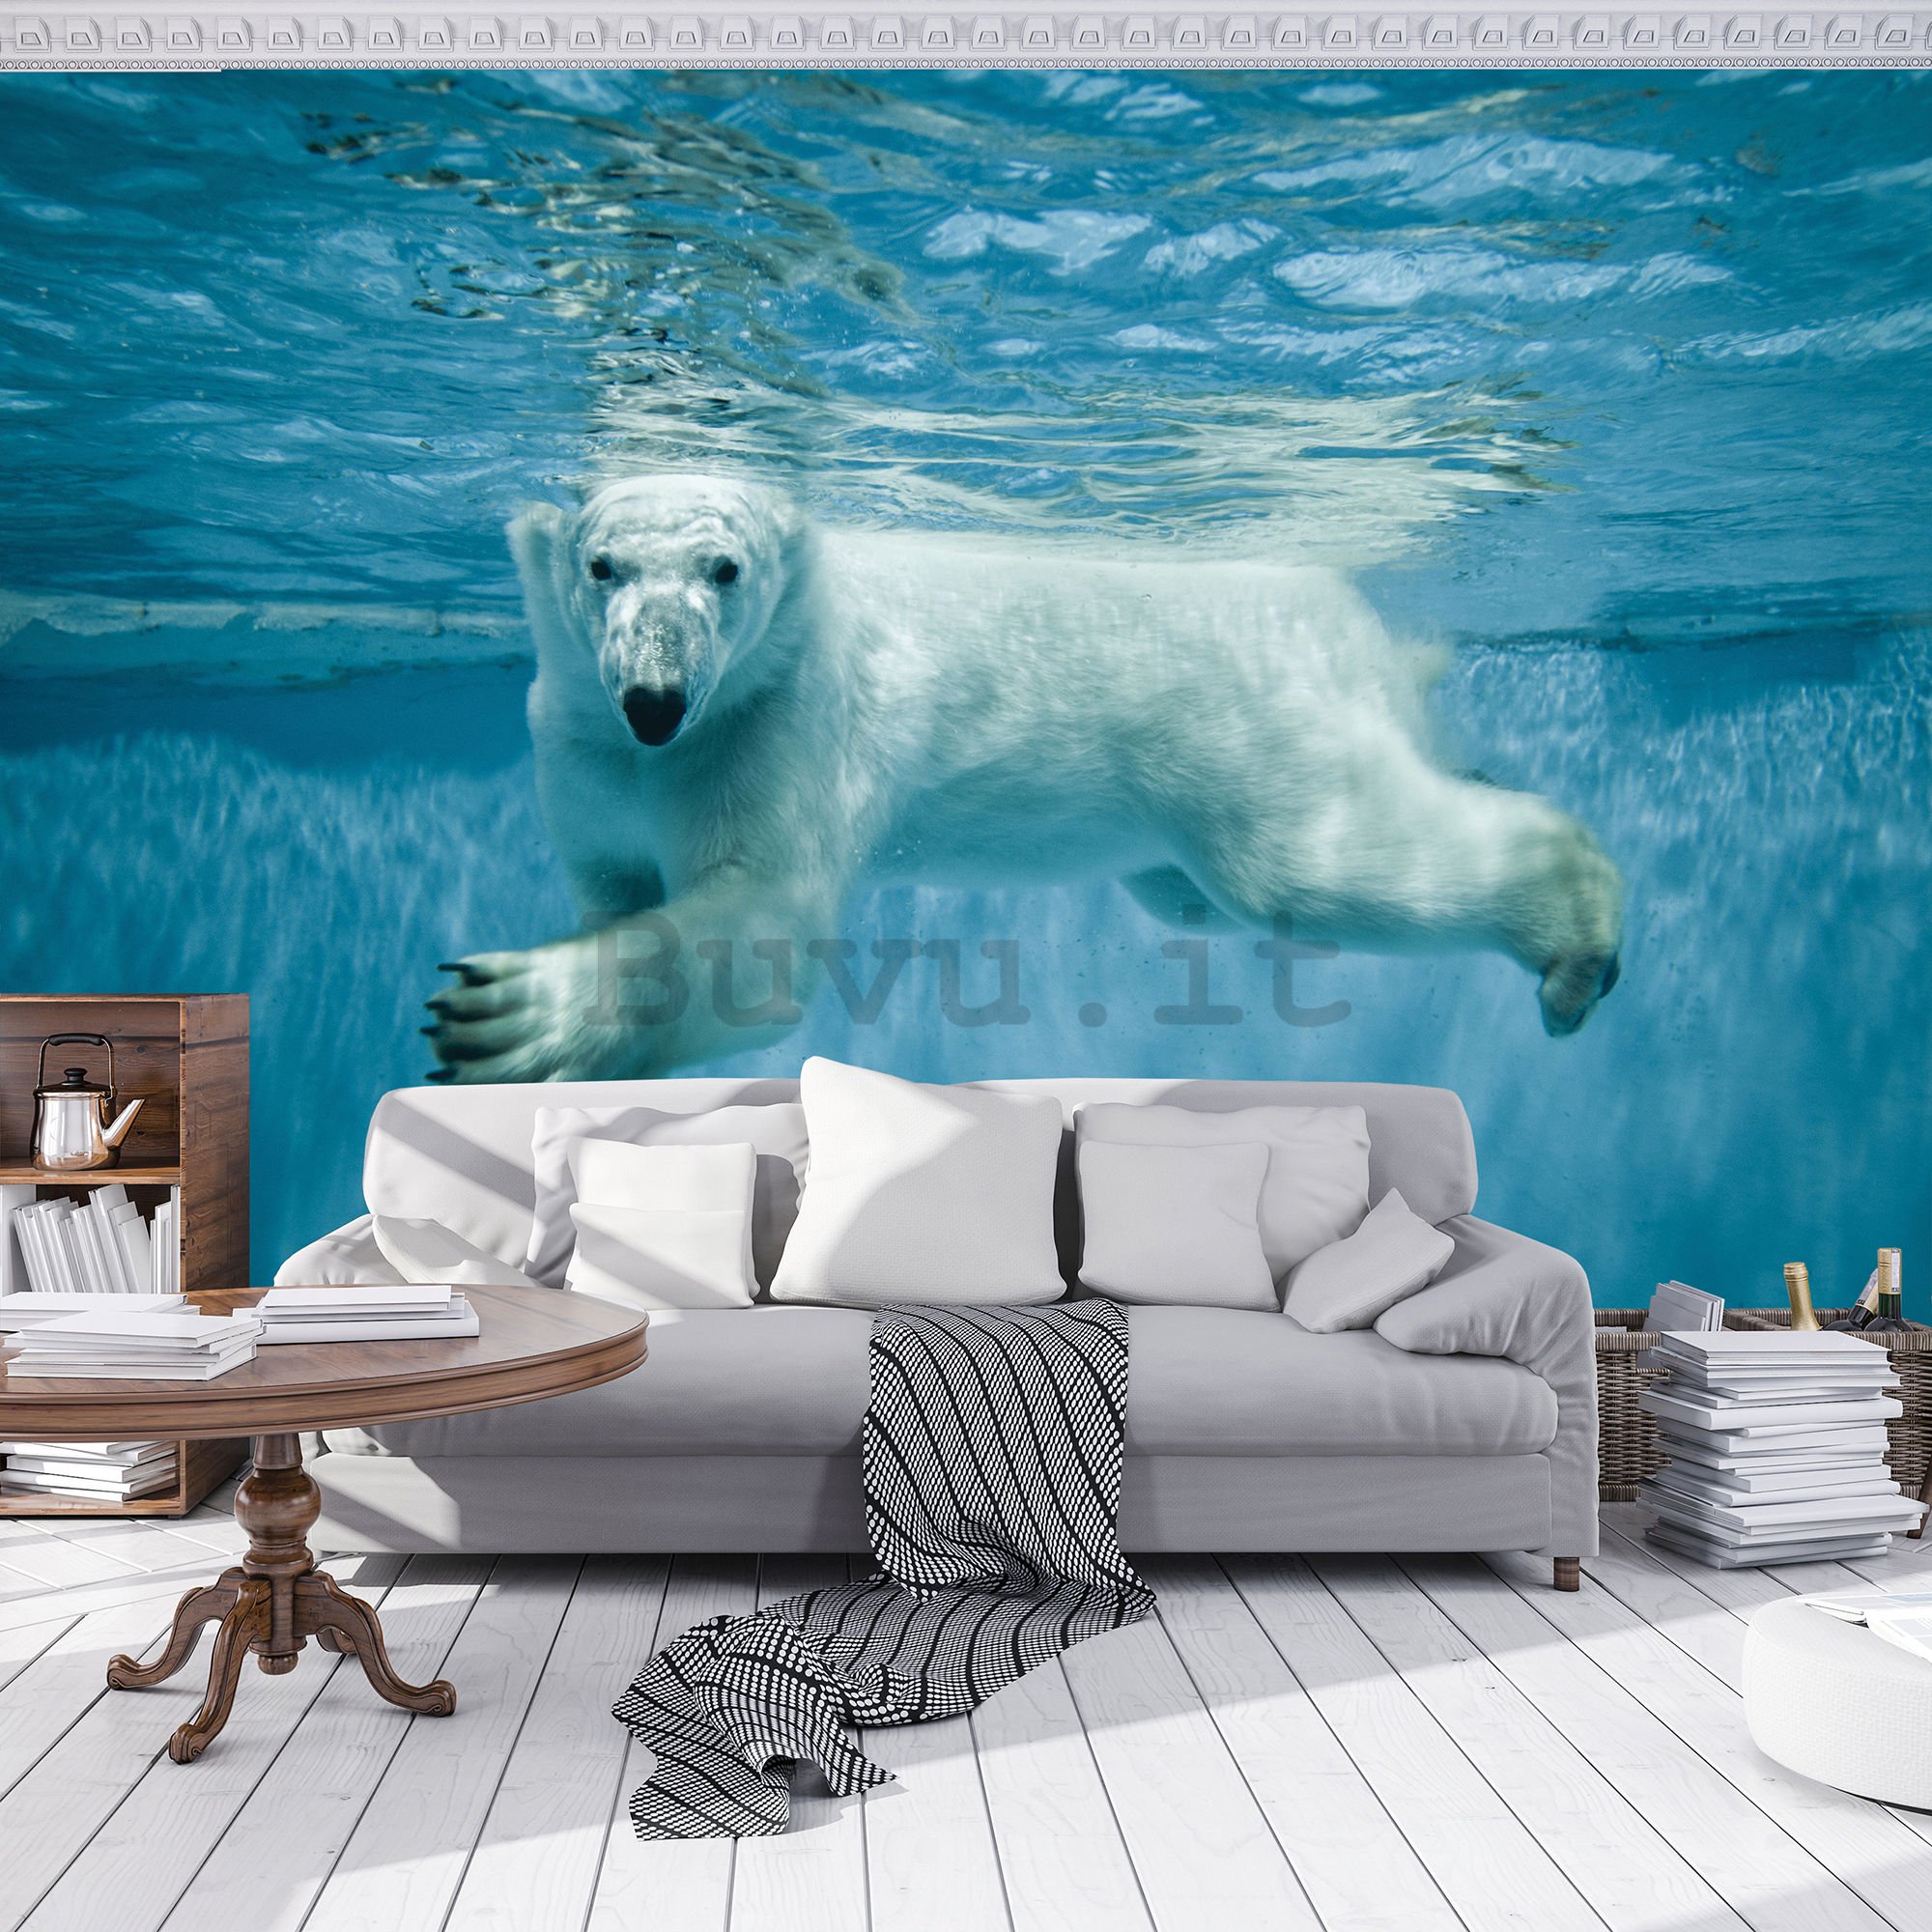 Fotomurale: Orso polare (1) - 254x368 cm